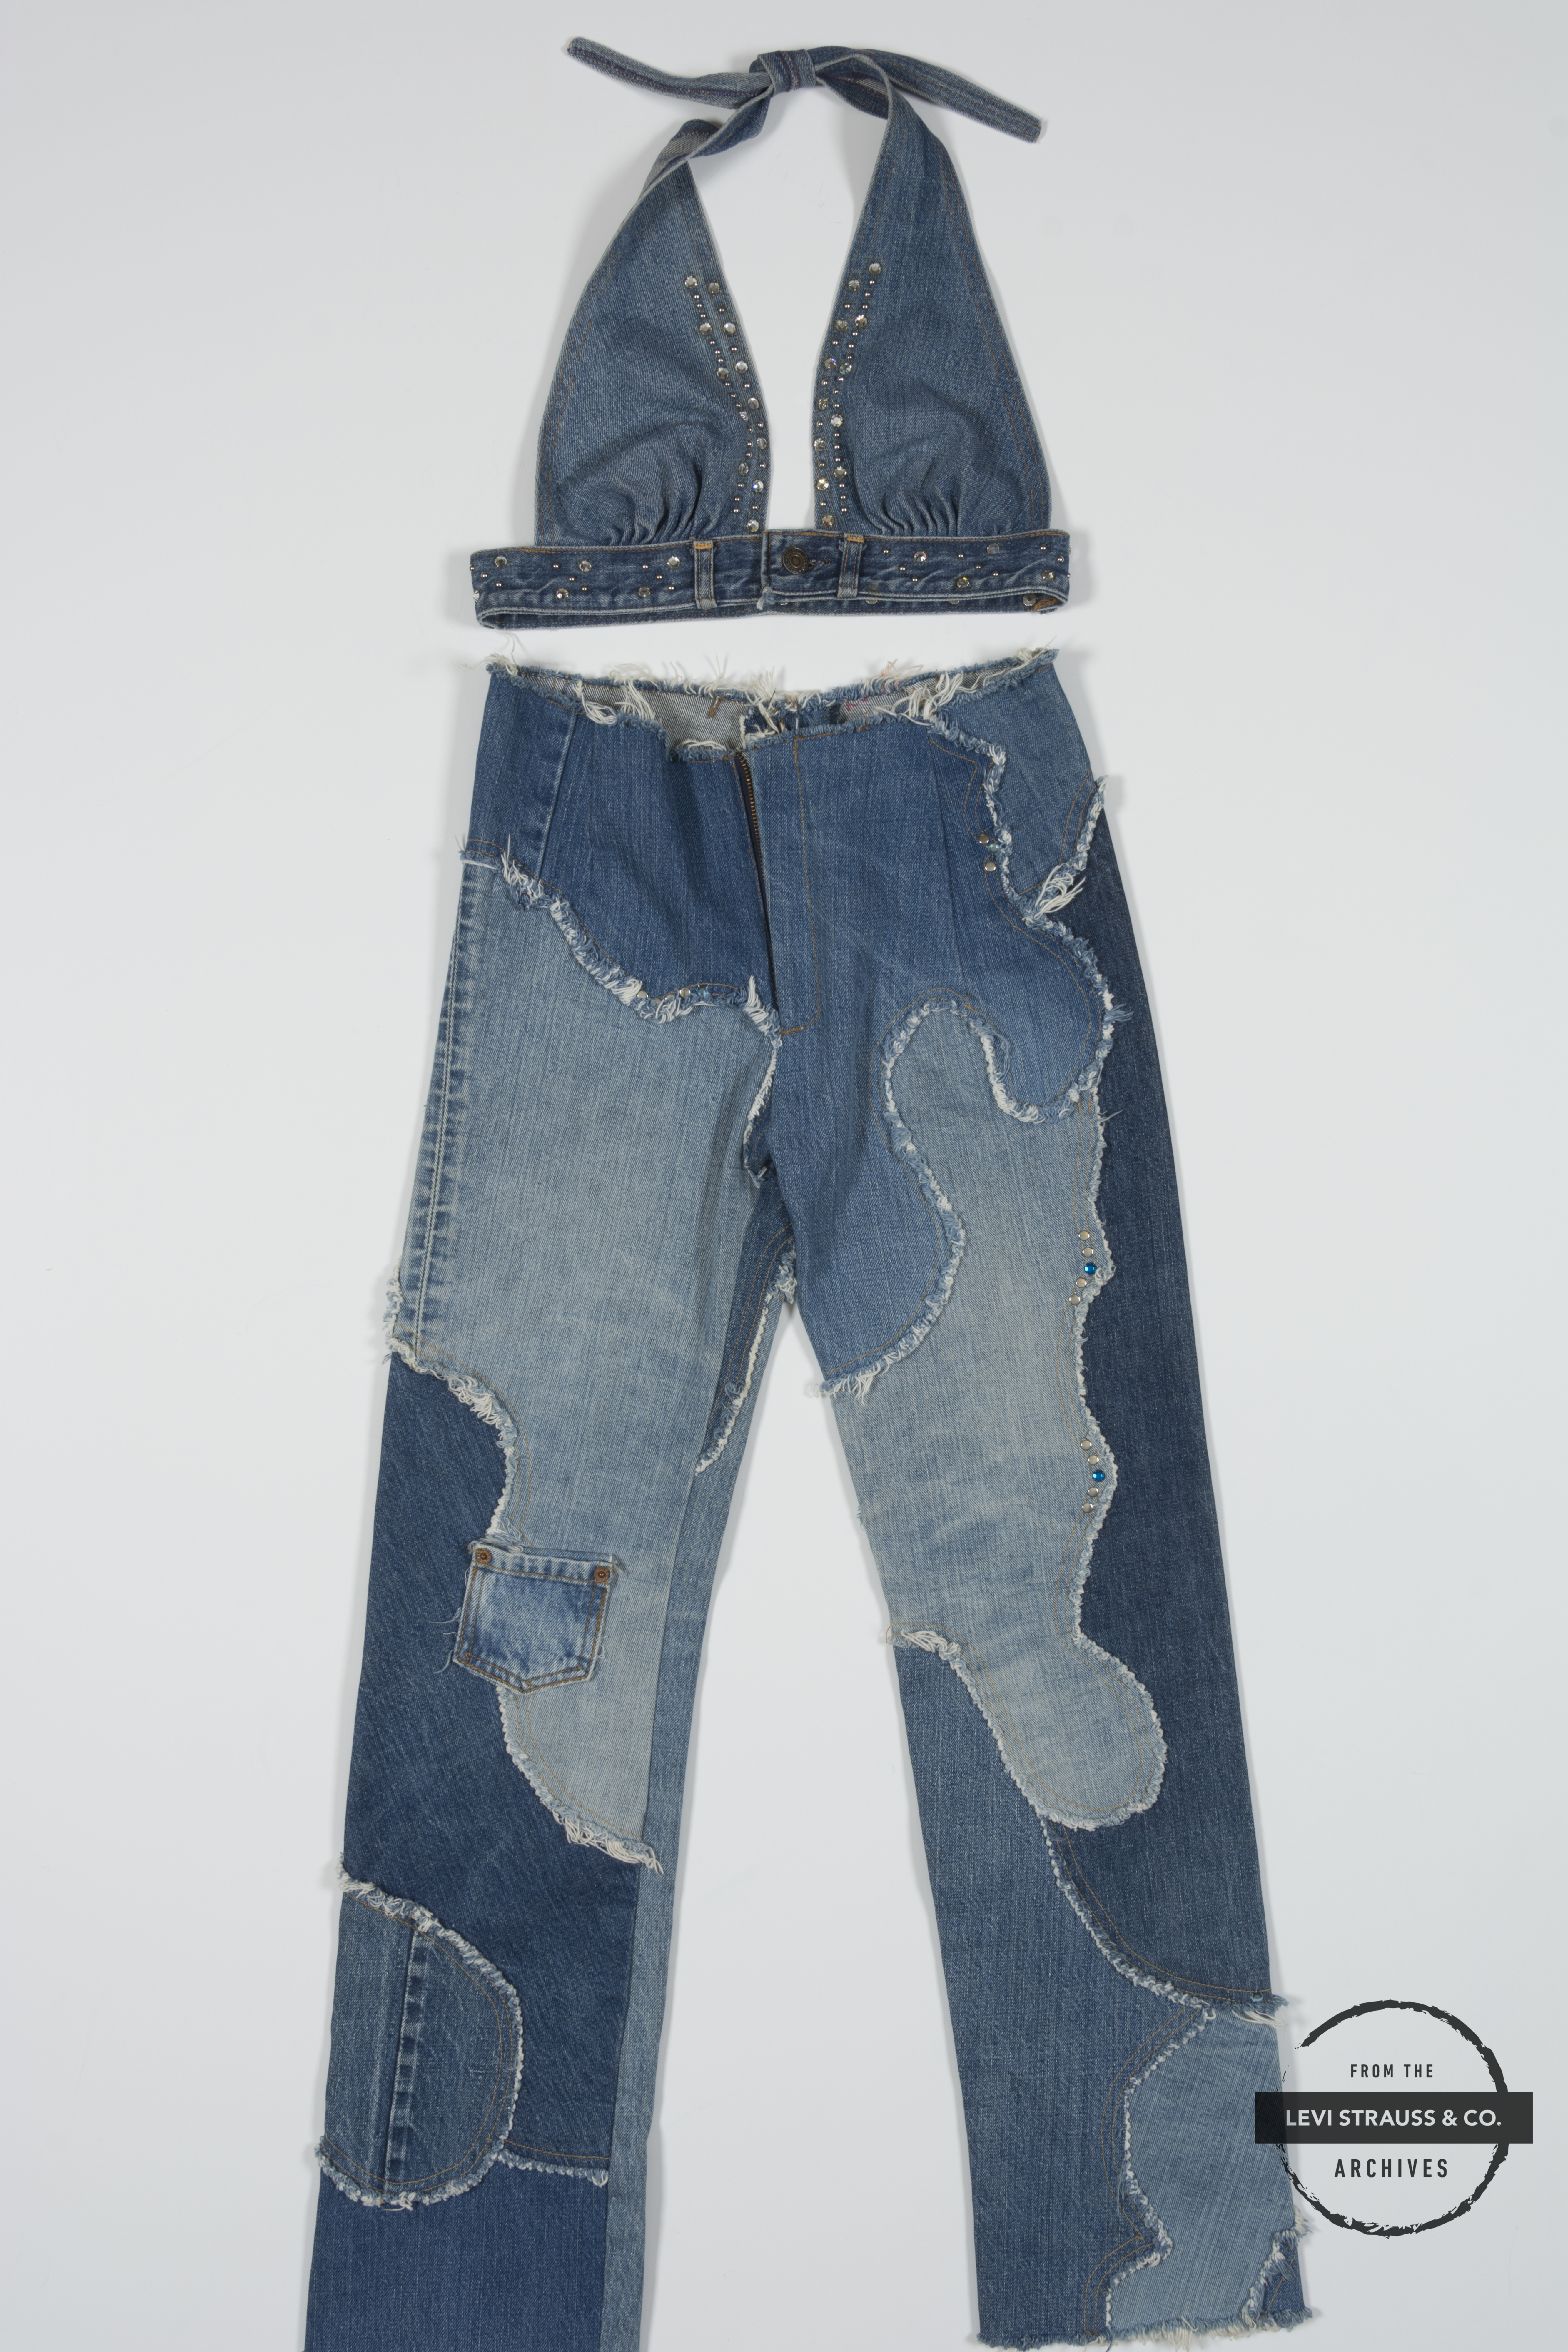 customize levis jeans